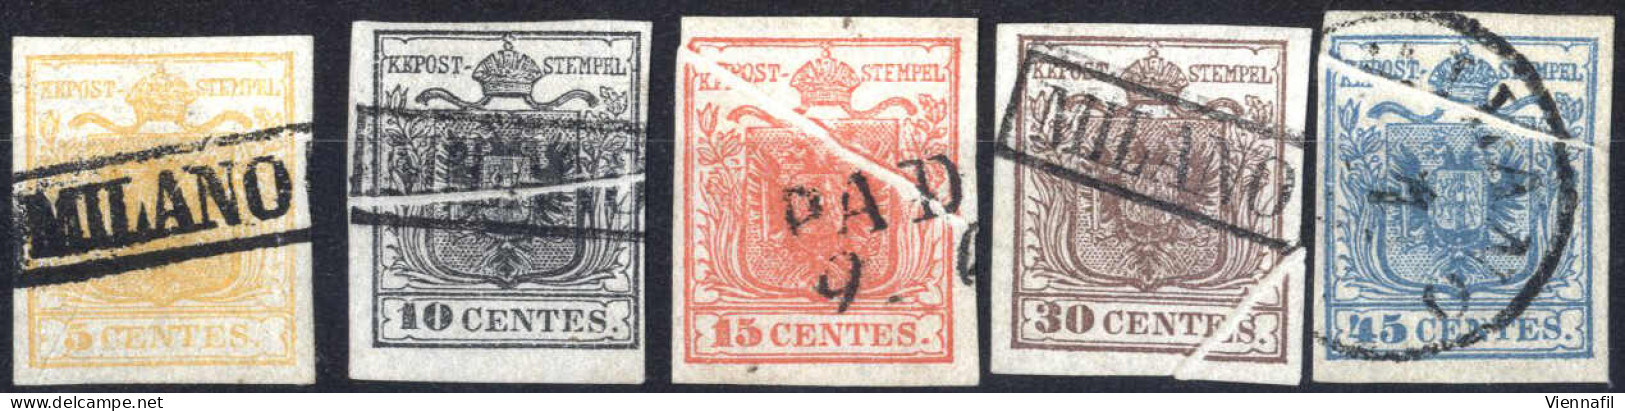 O 1850, Serie Completa Di 5 Valori Su Carta A Mano Con Pieghe Originali Di Carta, Due Certificati (10 E 45 Cent) E Tre V - Lombardy-Venetia